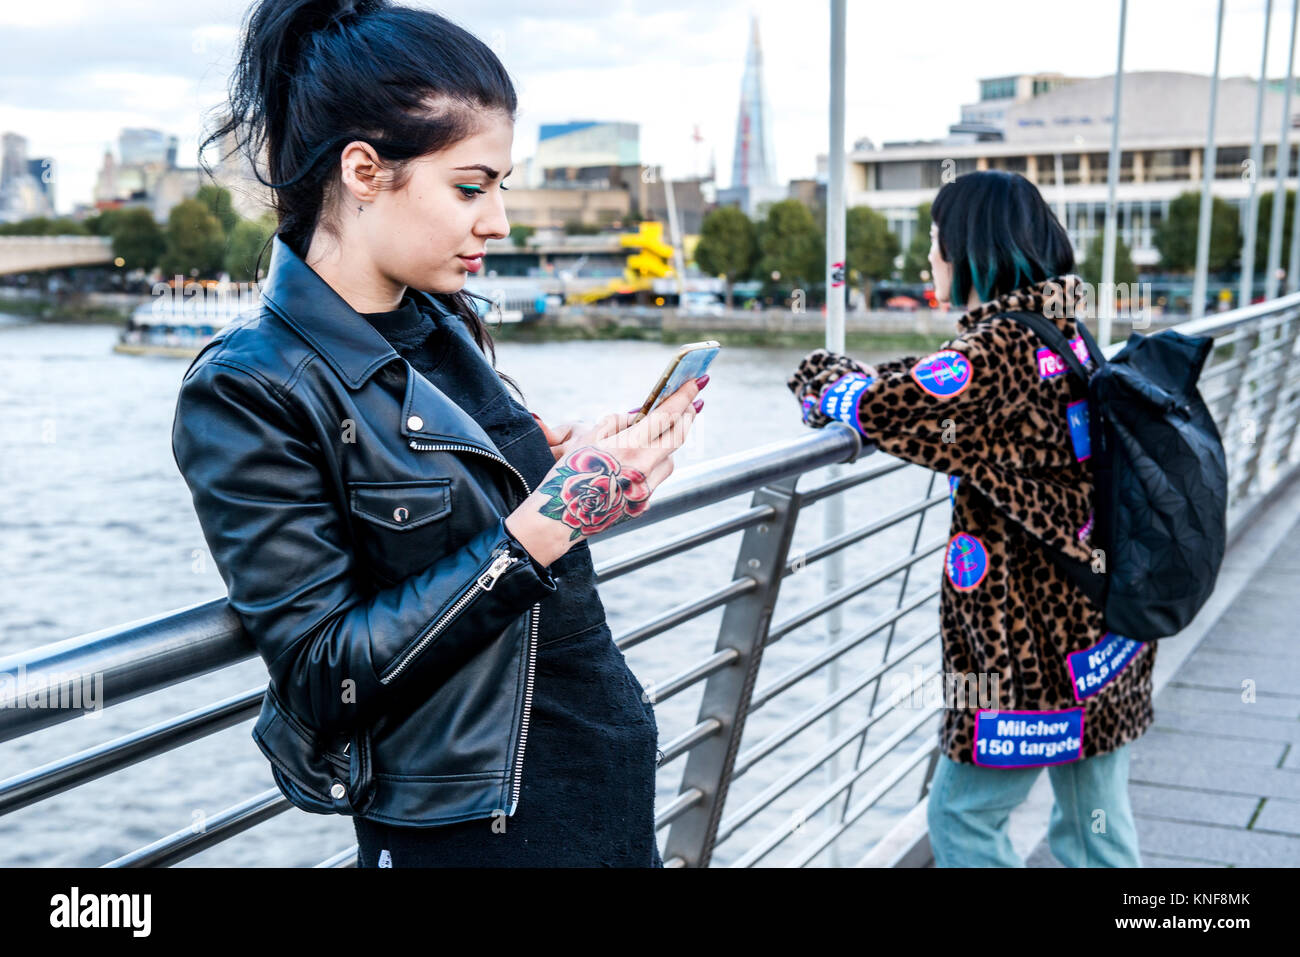 Junge Frau von Smartphone suchen mit Freund suchen von Millennium Fußgängerbrücke, London, UK Stockfoto